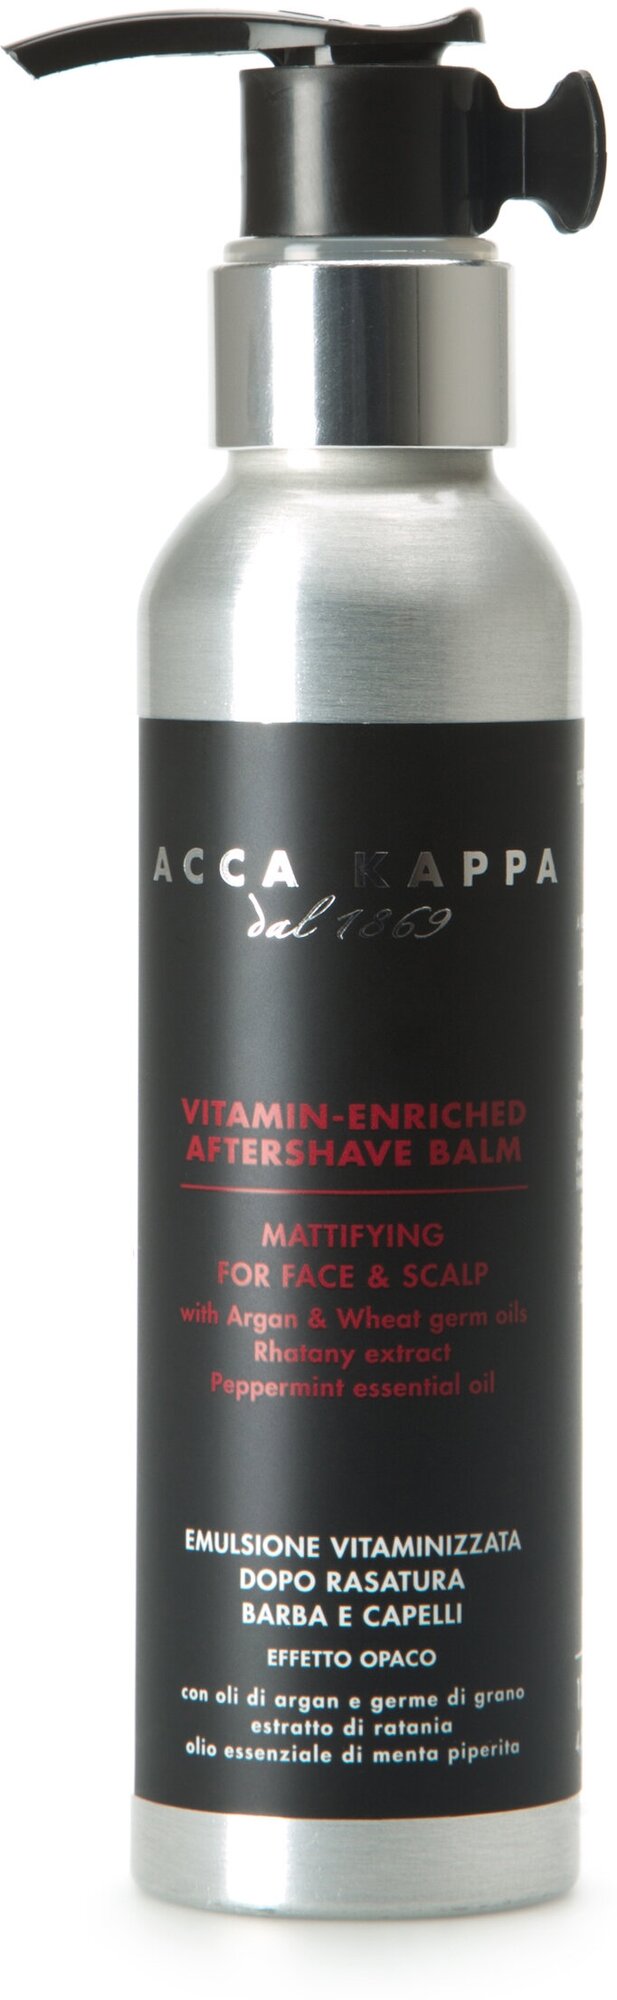 ACCA KAPPA Питательный бальзам после бритья с витаминами 125 гр